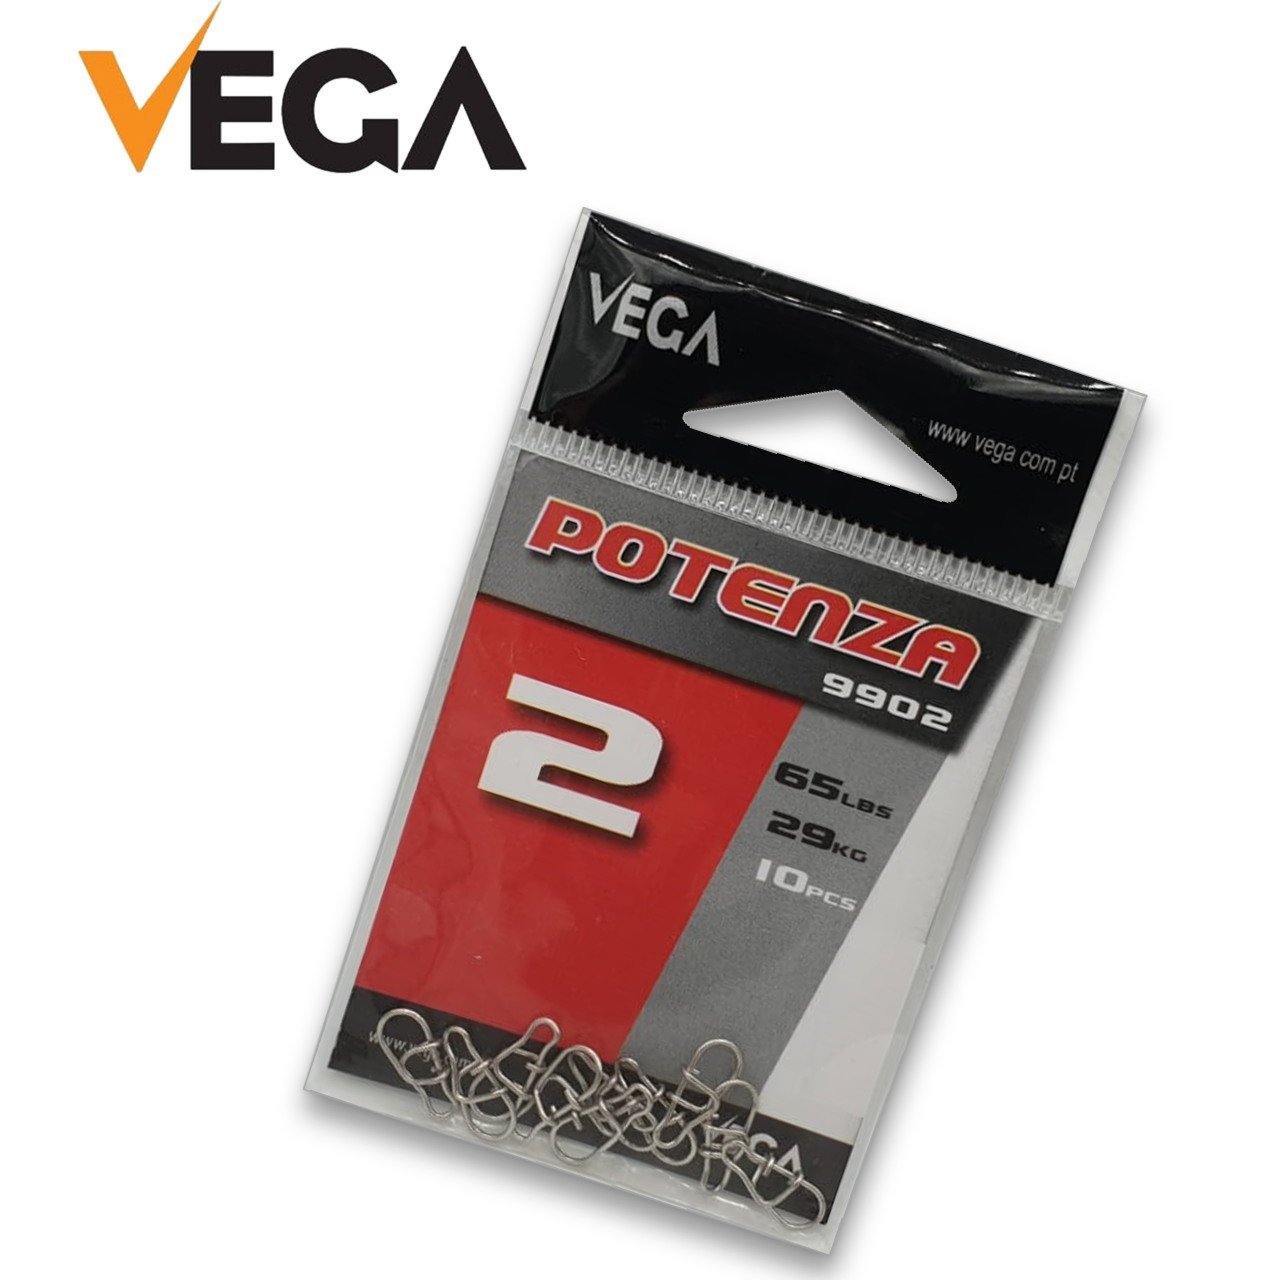 Vega Potenza 9902 Tournament NO:2 (crosslock) snap